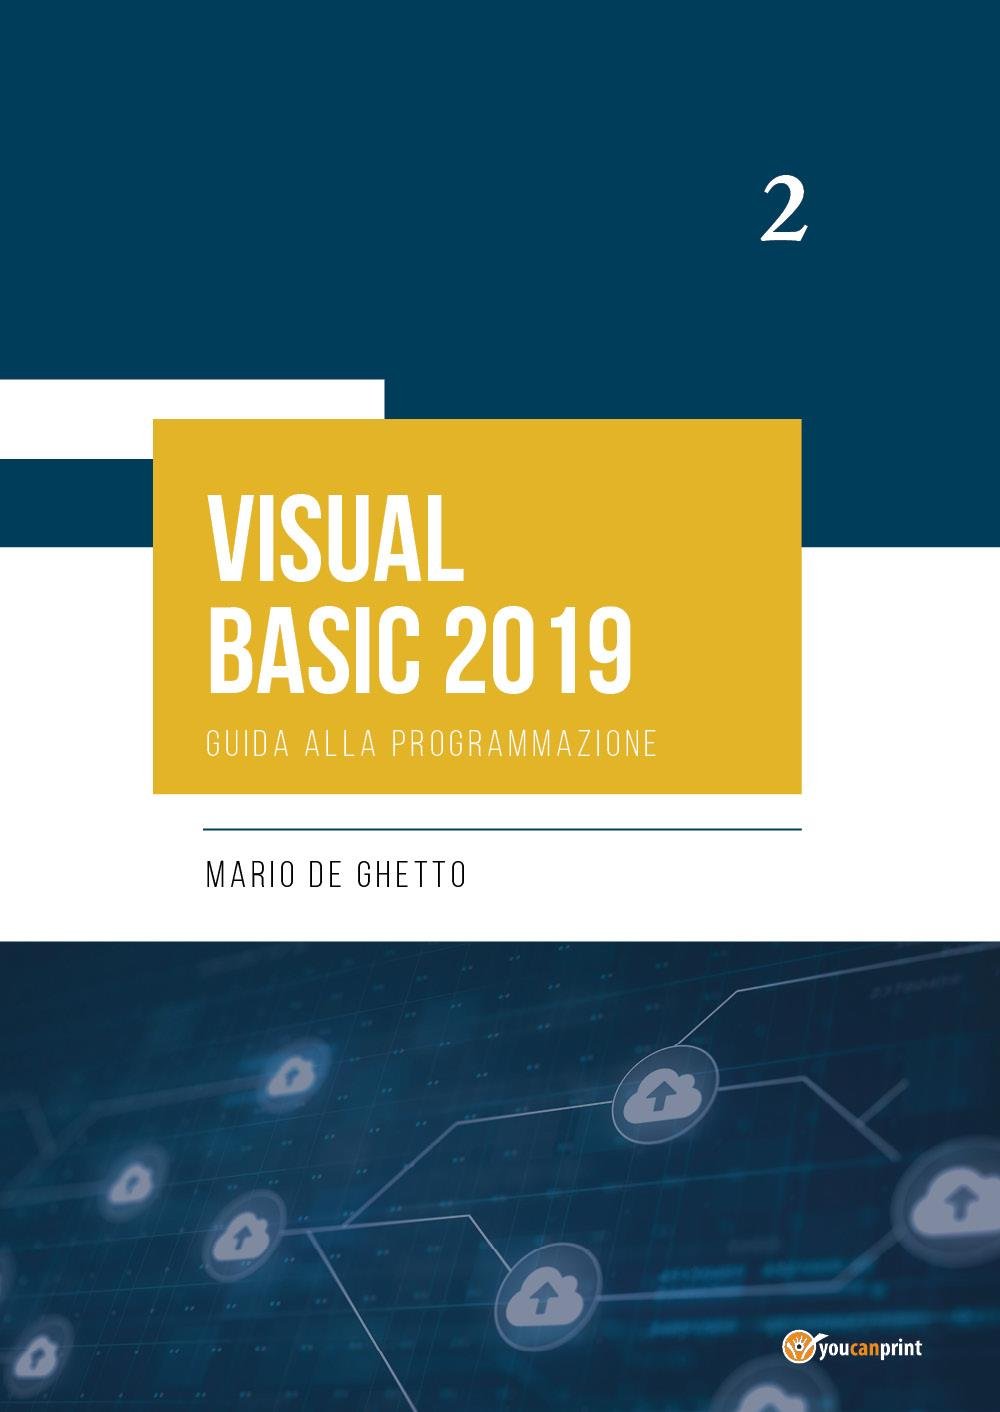 VISUAL BASIC 2019 - Guida alla programmazione